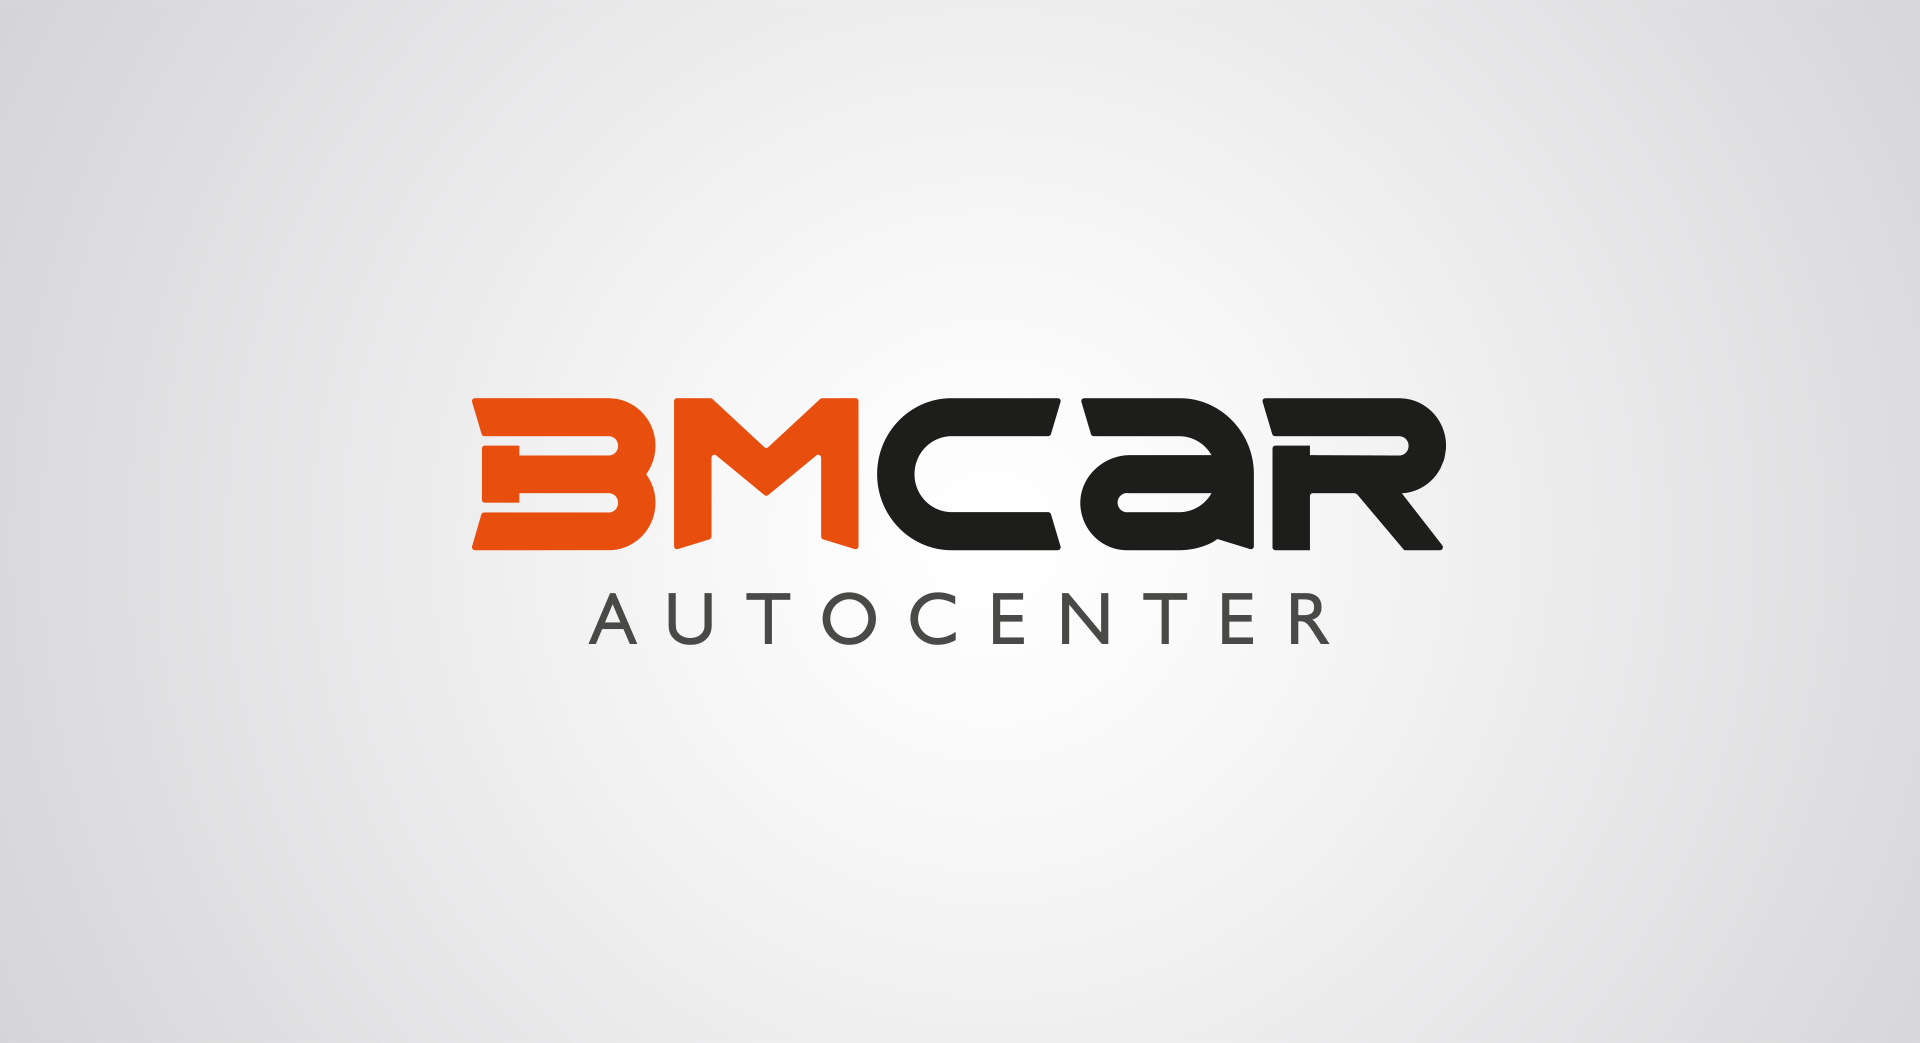 BM Car Auto Center - A logo